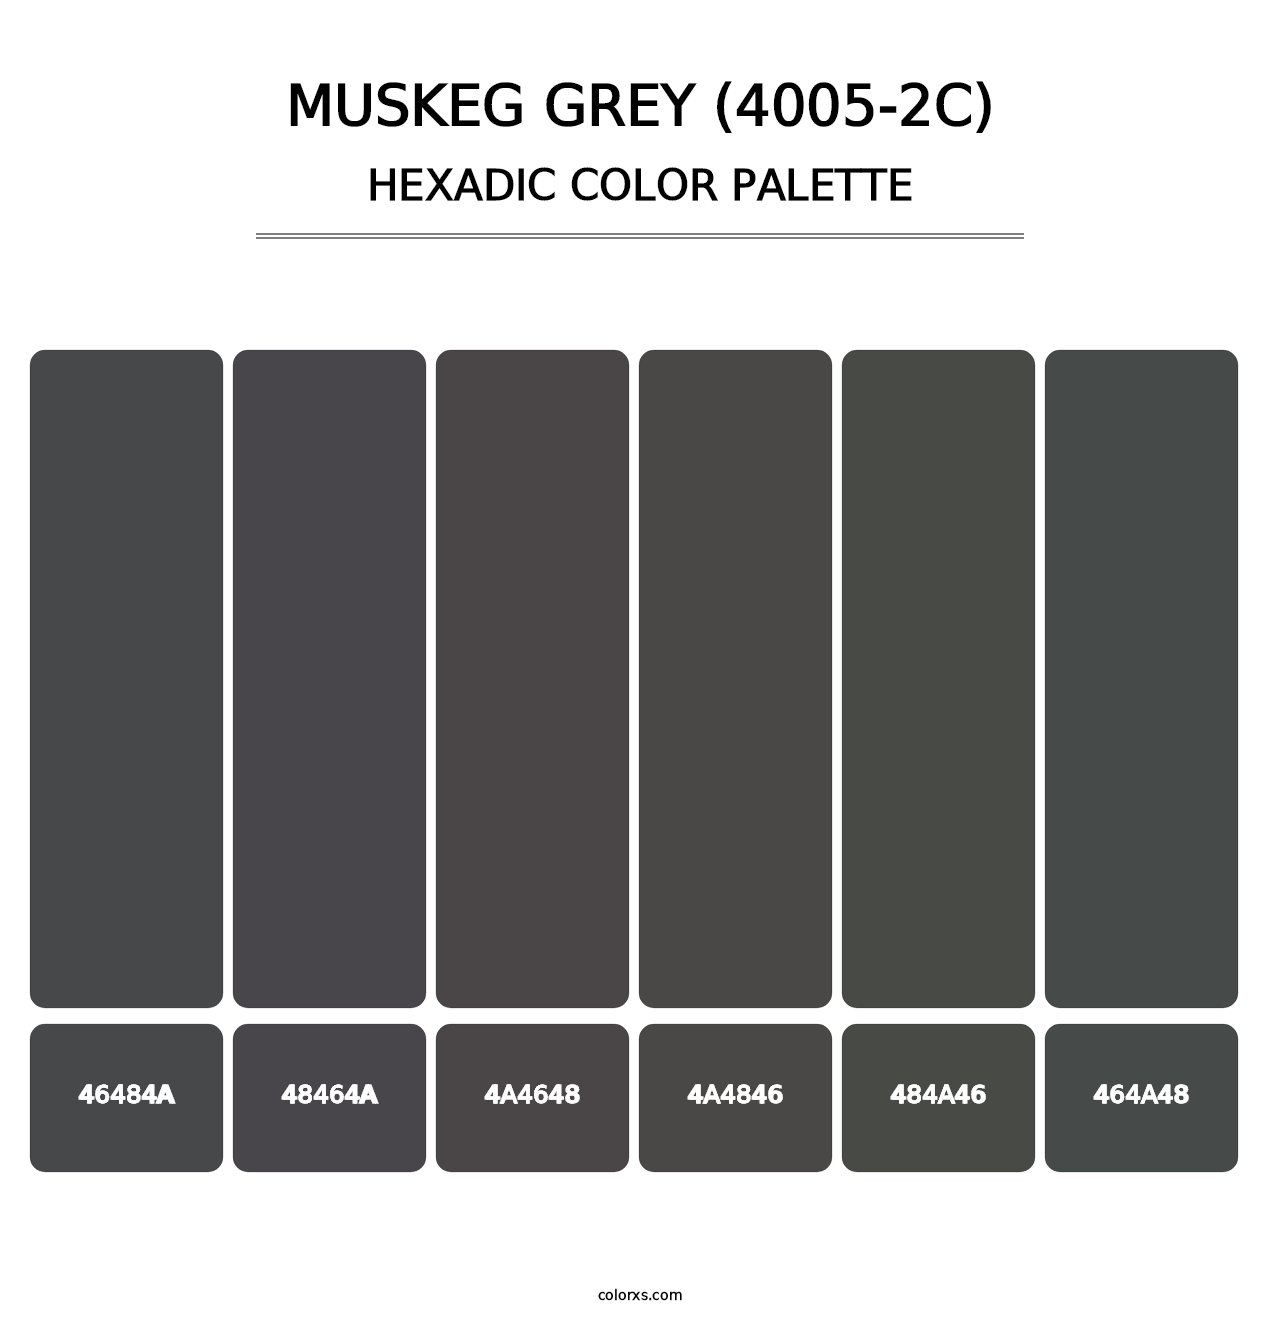 Muskeg Grey (4005-2C) - Hexadic Color Palette